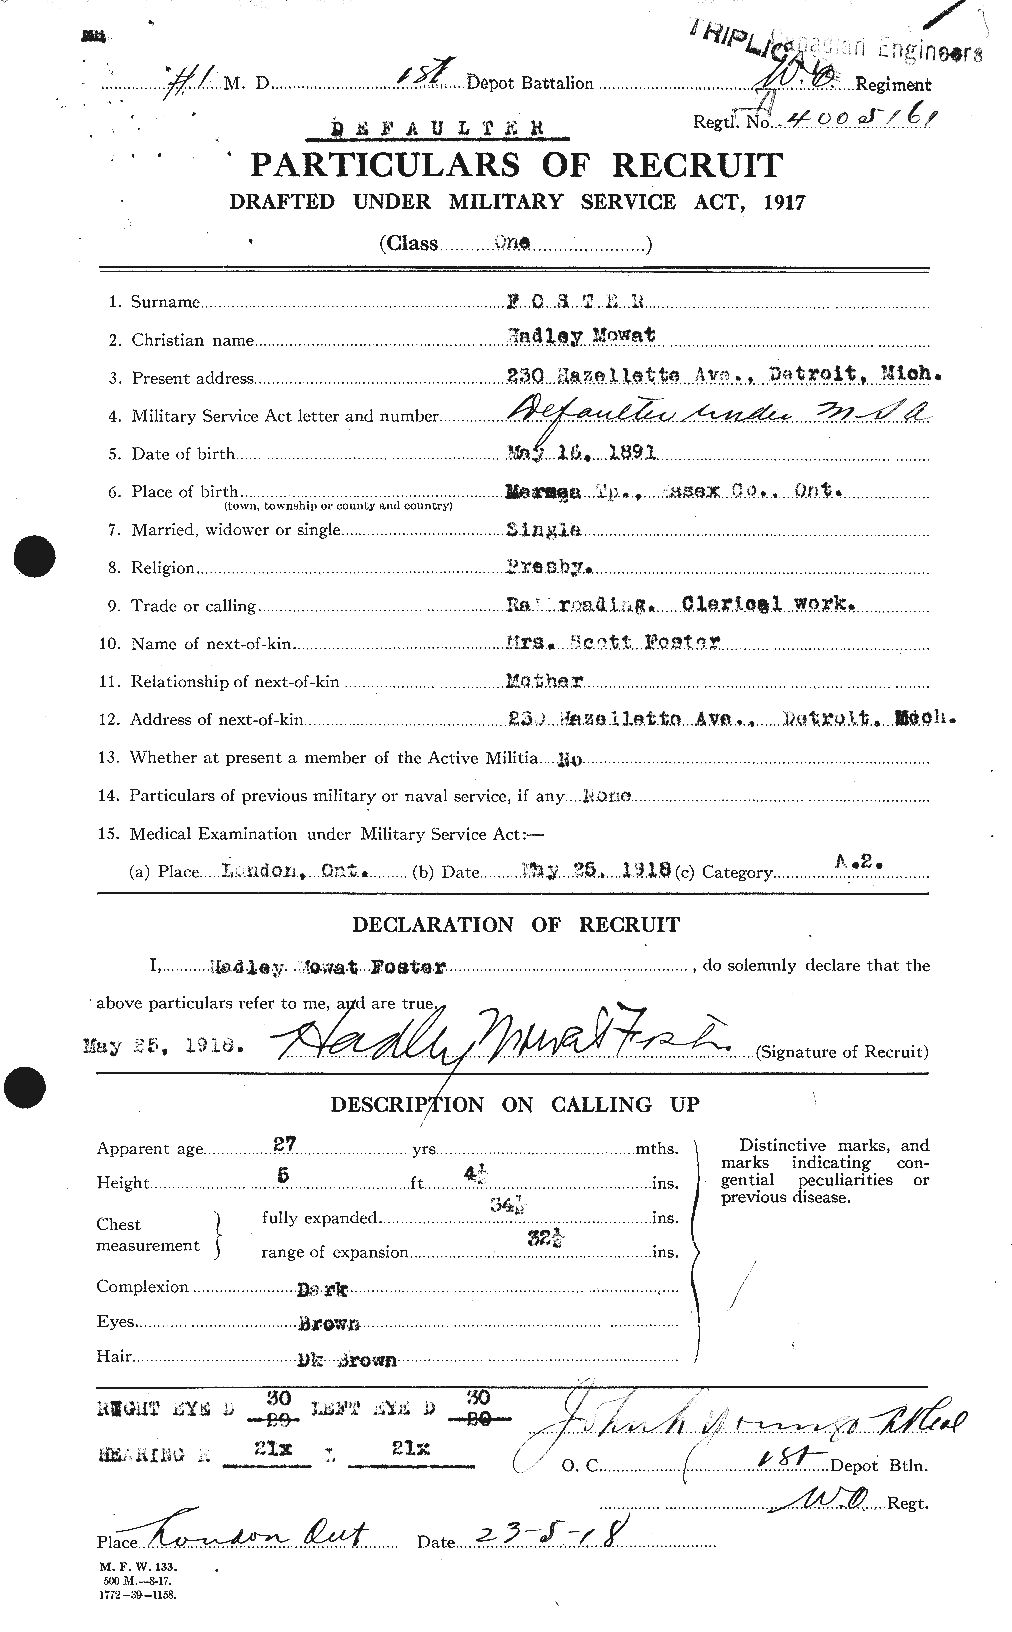 Dossiers du Personnel de la Première Guerre mondiale - CEC 330721a